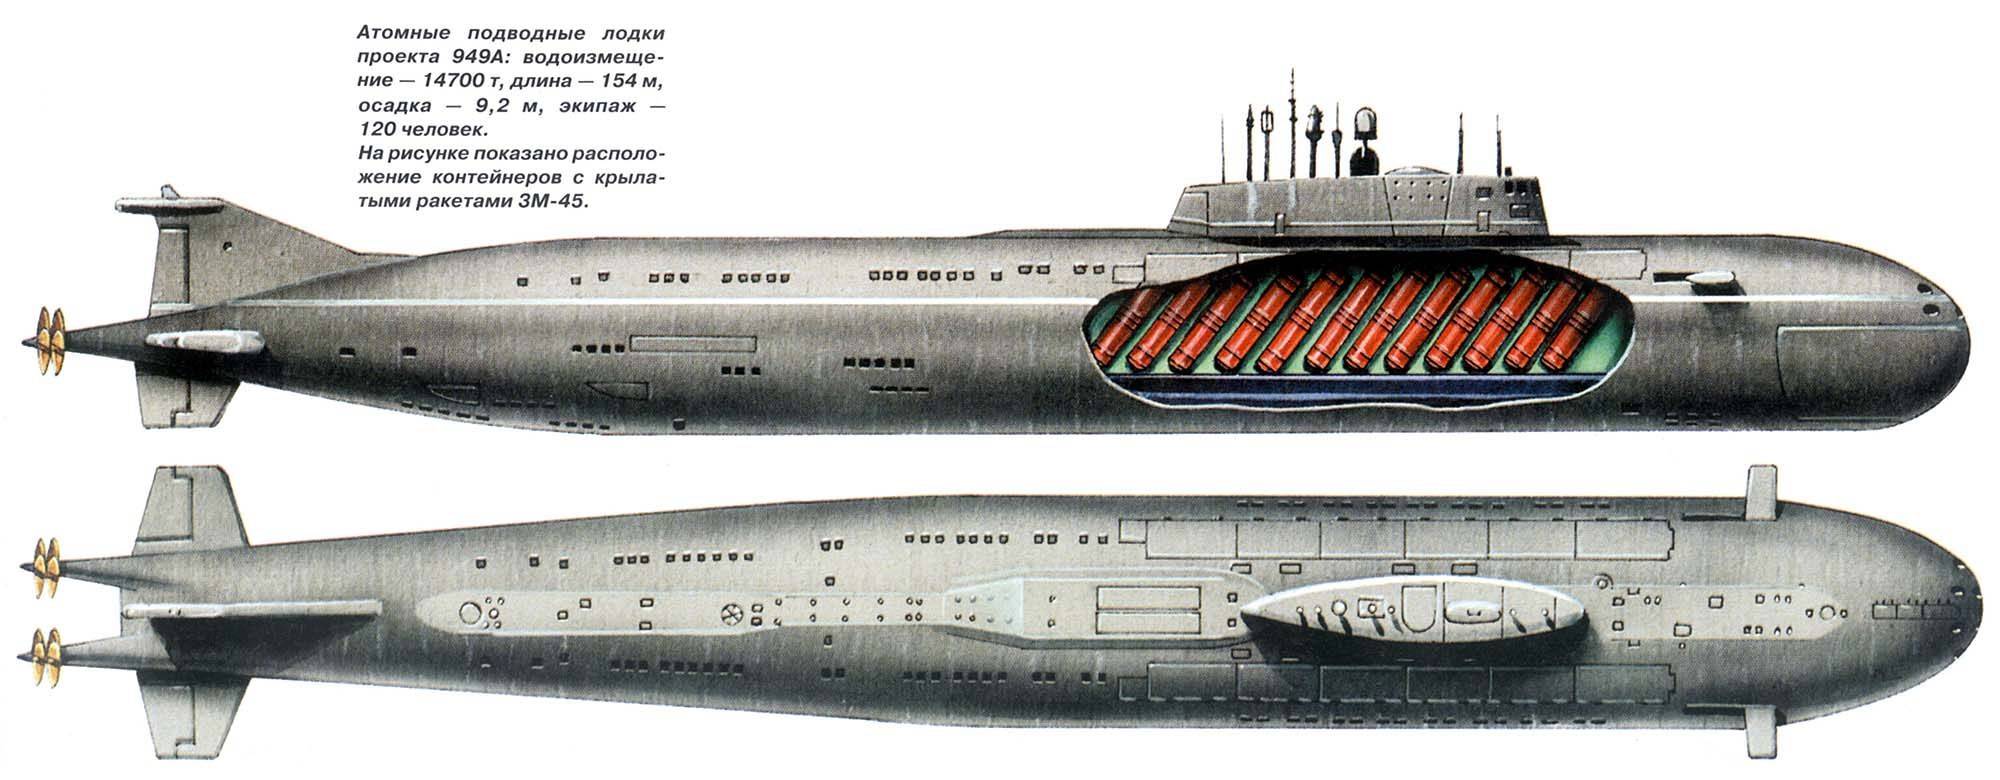 Атомная подводная лодка сша класса «los angeles»